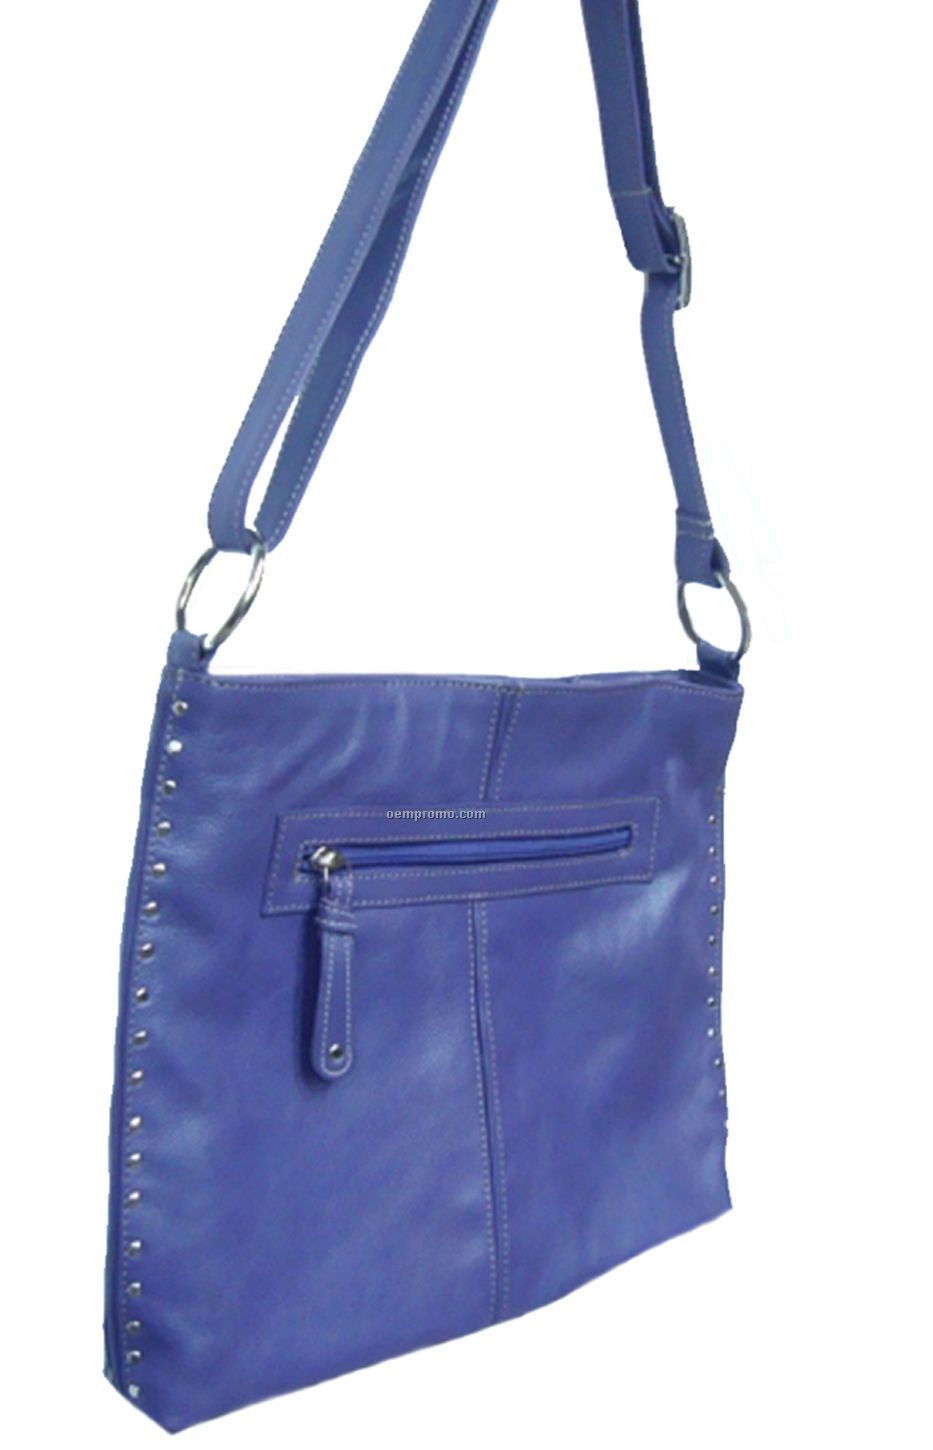 Blue Purse W/ Side Zip Pocket